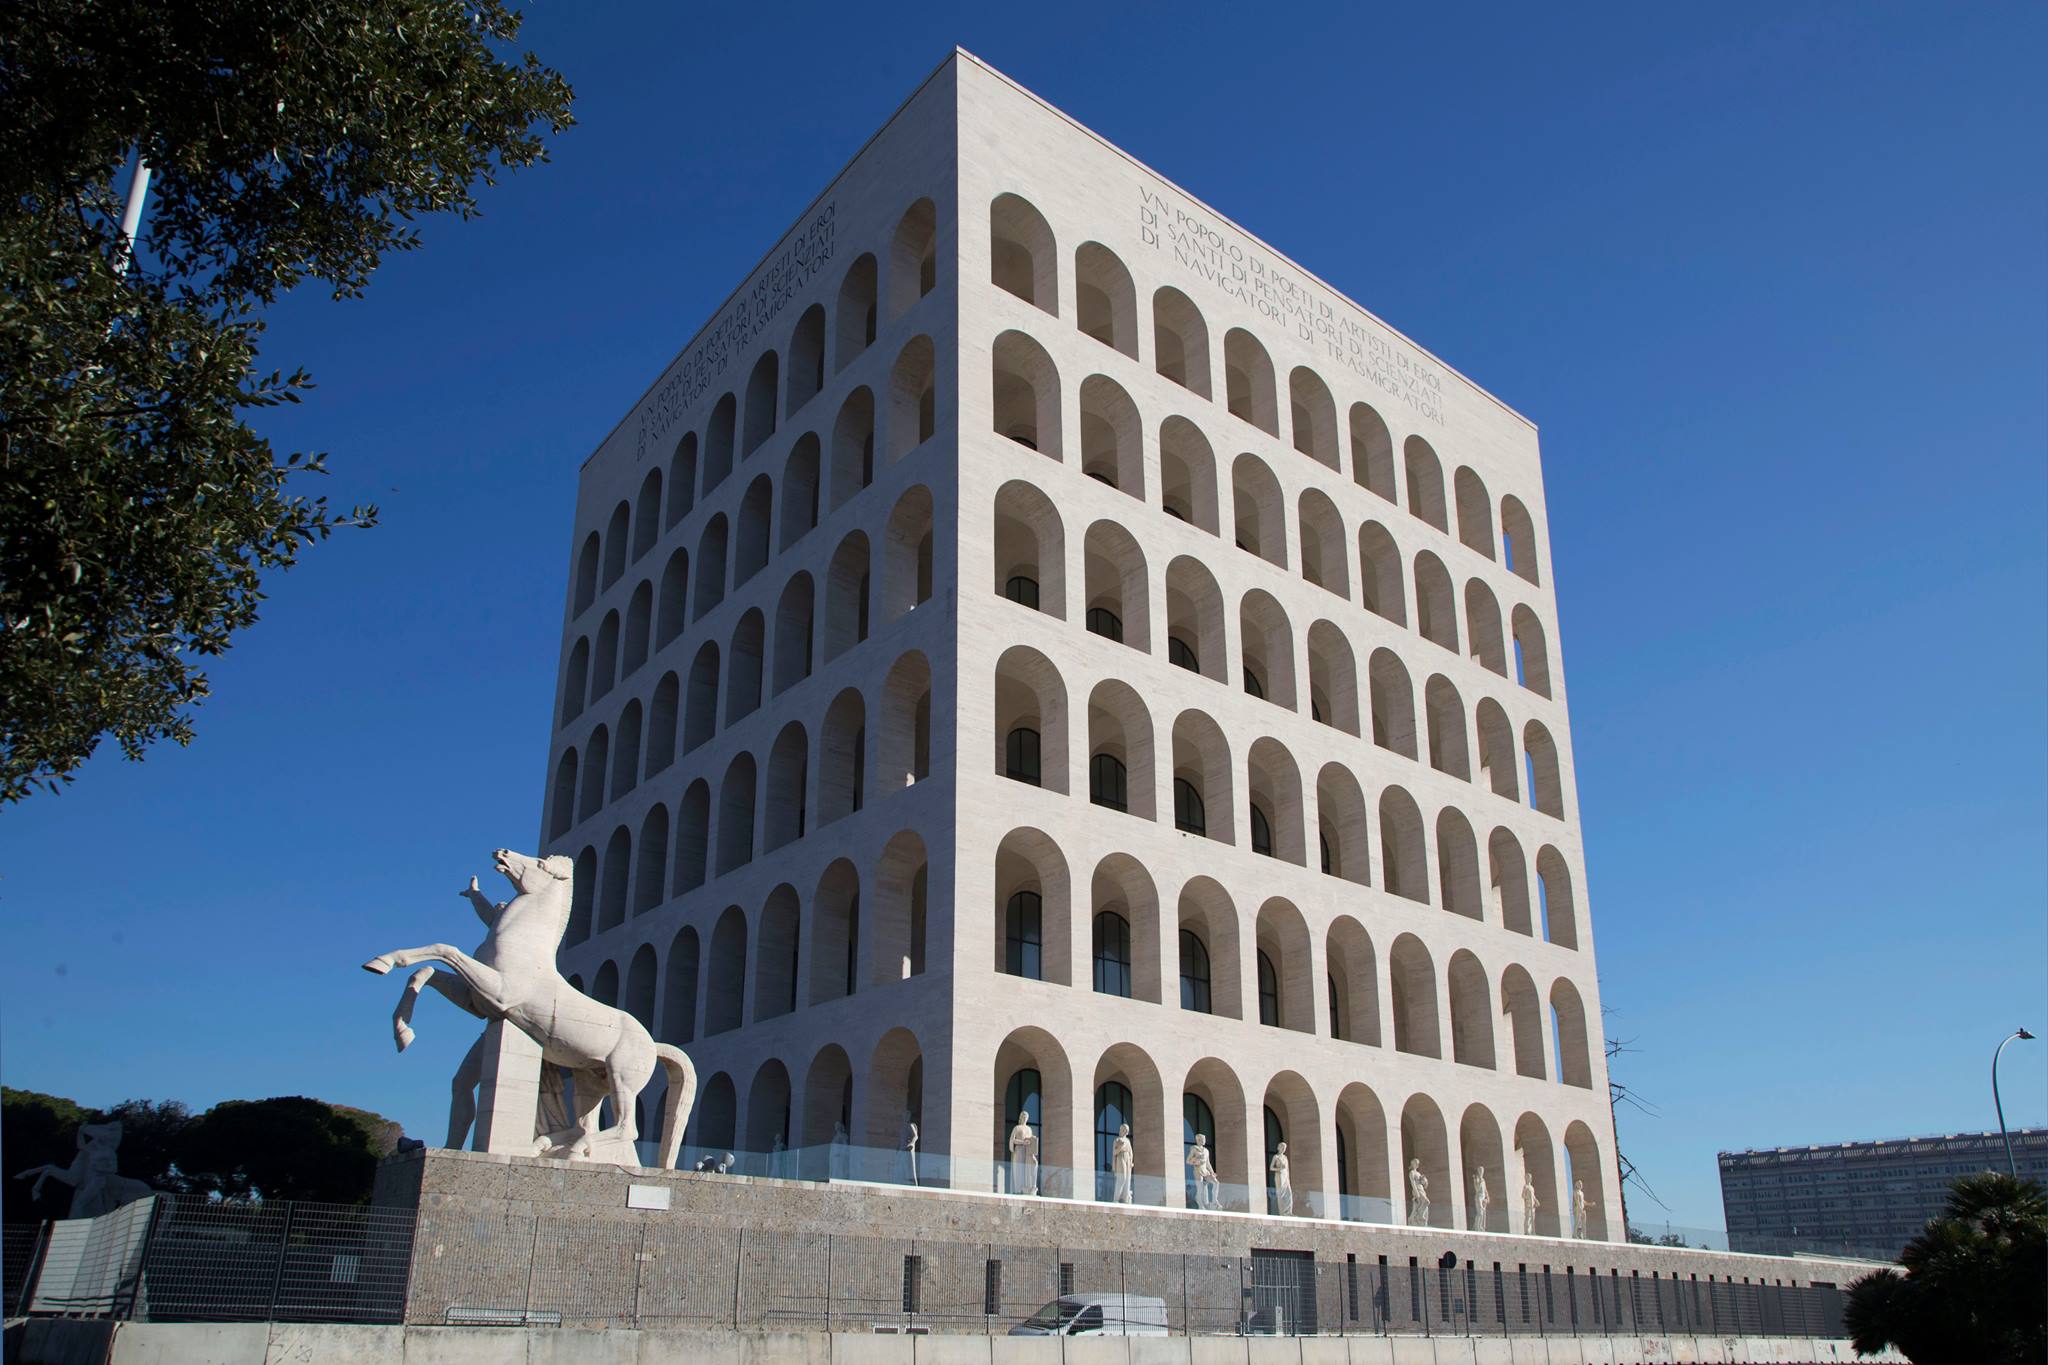 Palazzo della Civiltà Italiana - Rome